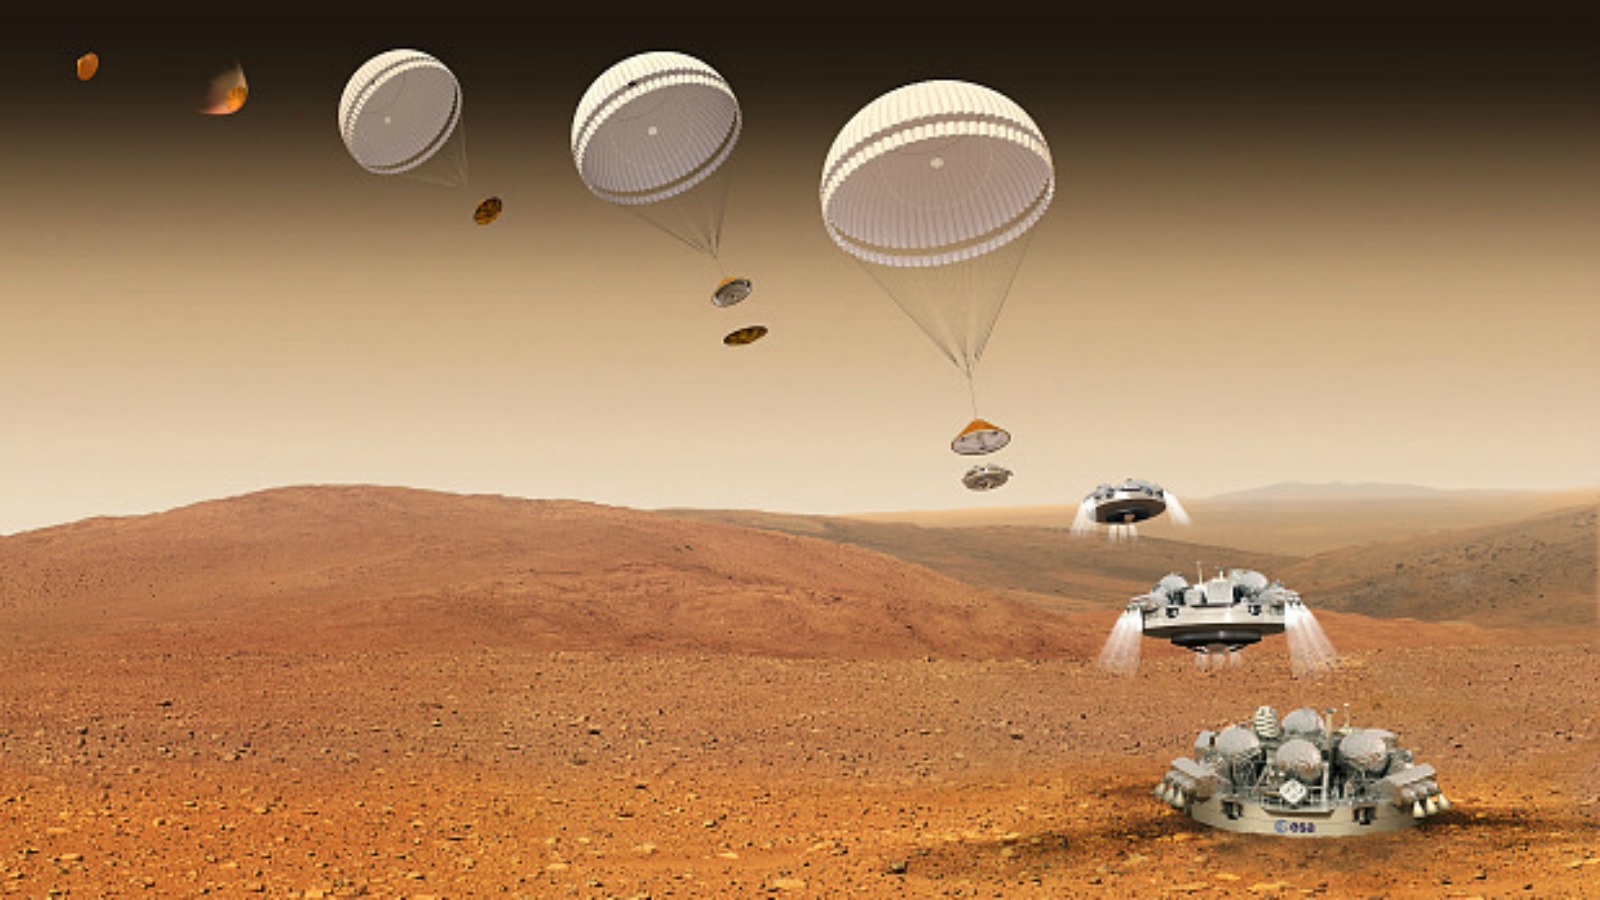 Посадочный модуль Schiaparelli сегодня совершил посадку на Марсе: ученые надеются найти признаки жизни на соседней планете